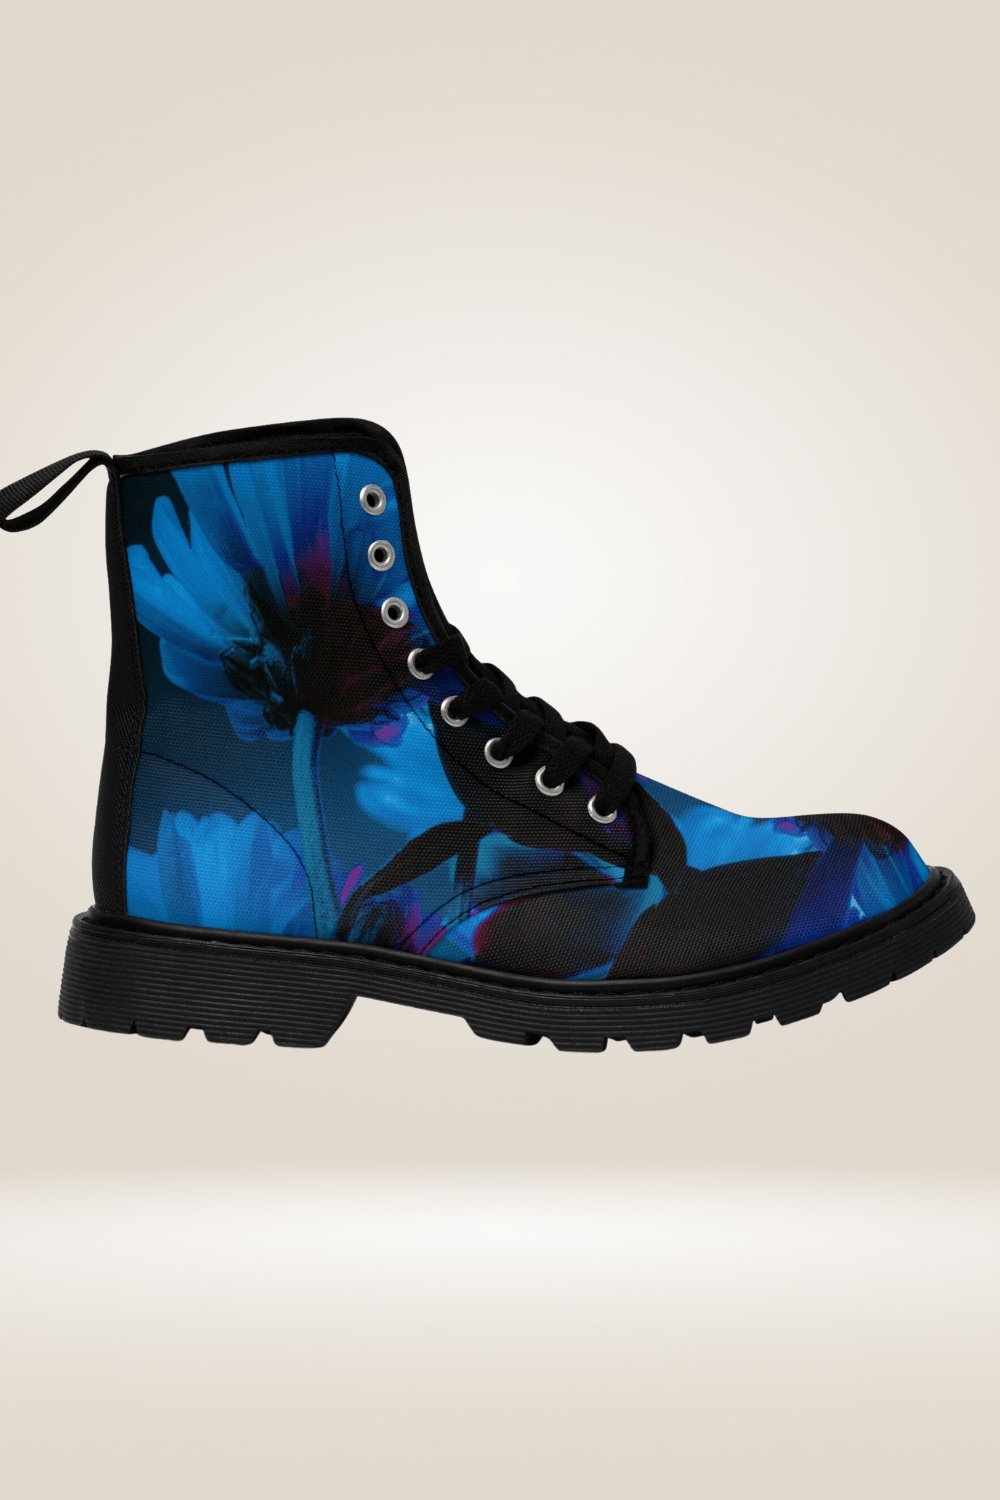 Blue Flower Print Combat Boots - Black Sole - TGC Boutique - Boots